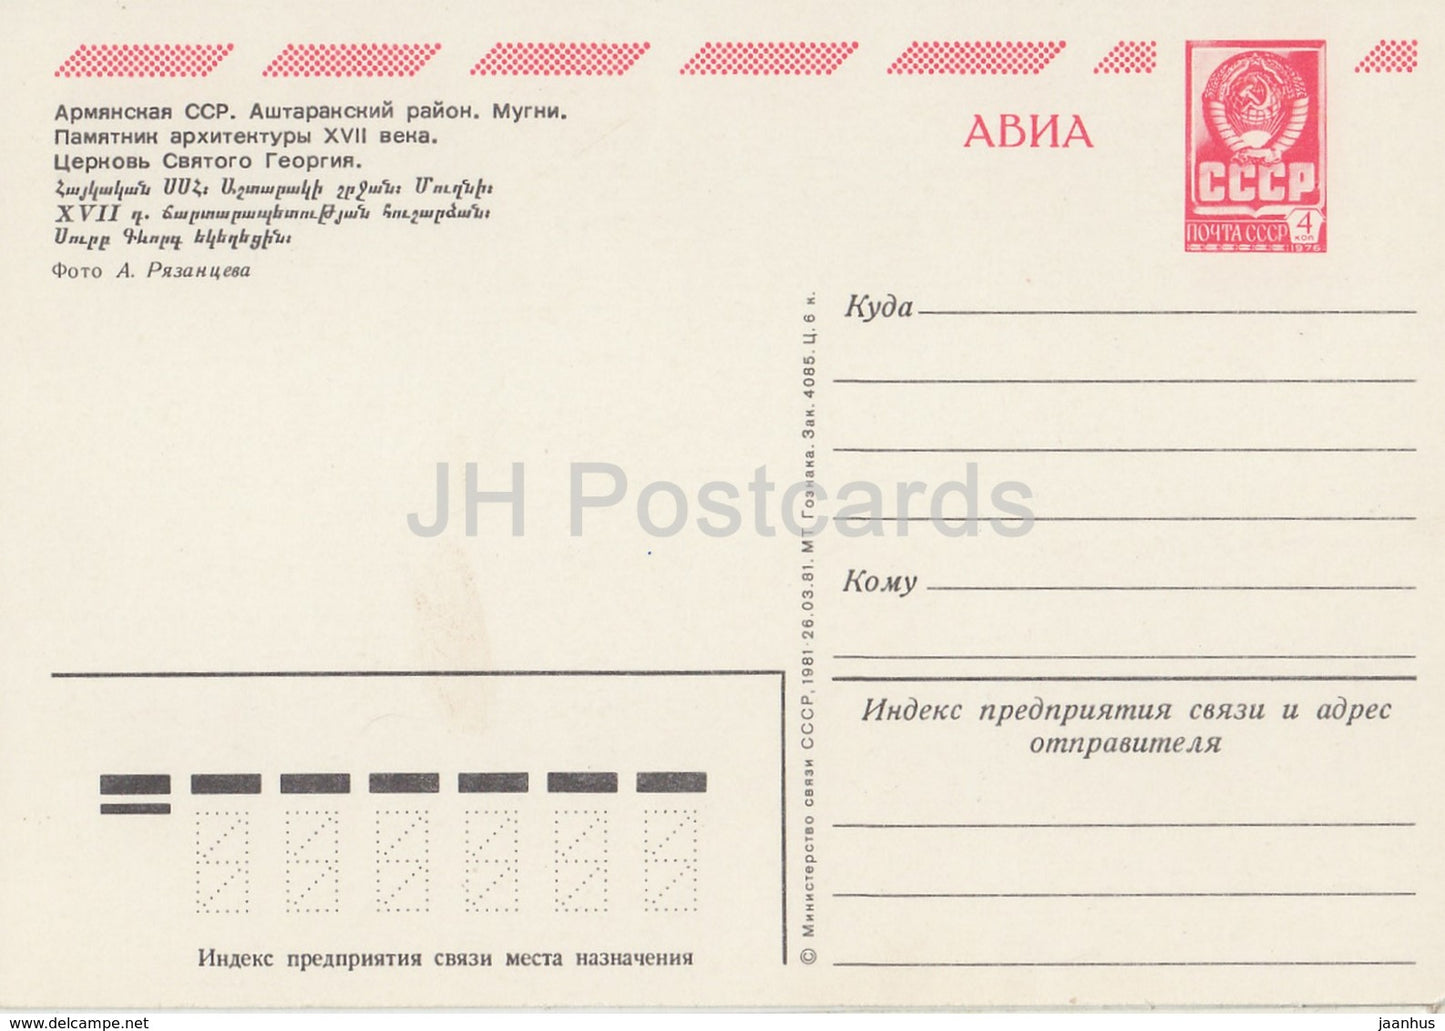 Ashtarak Region - Saint Gevork Monastery of Mughni - AVIA - postal stationery - 1981 - Armenia USSR -  unused